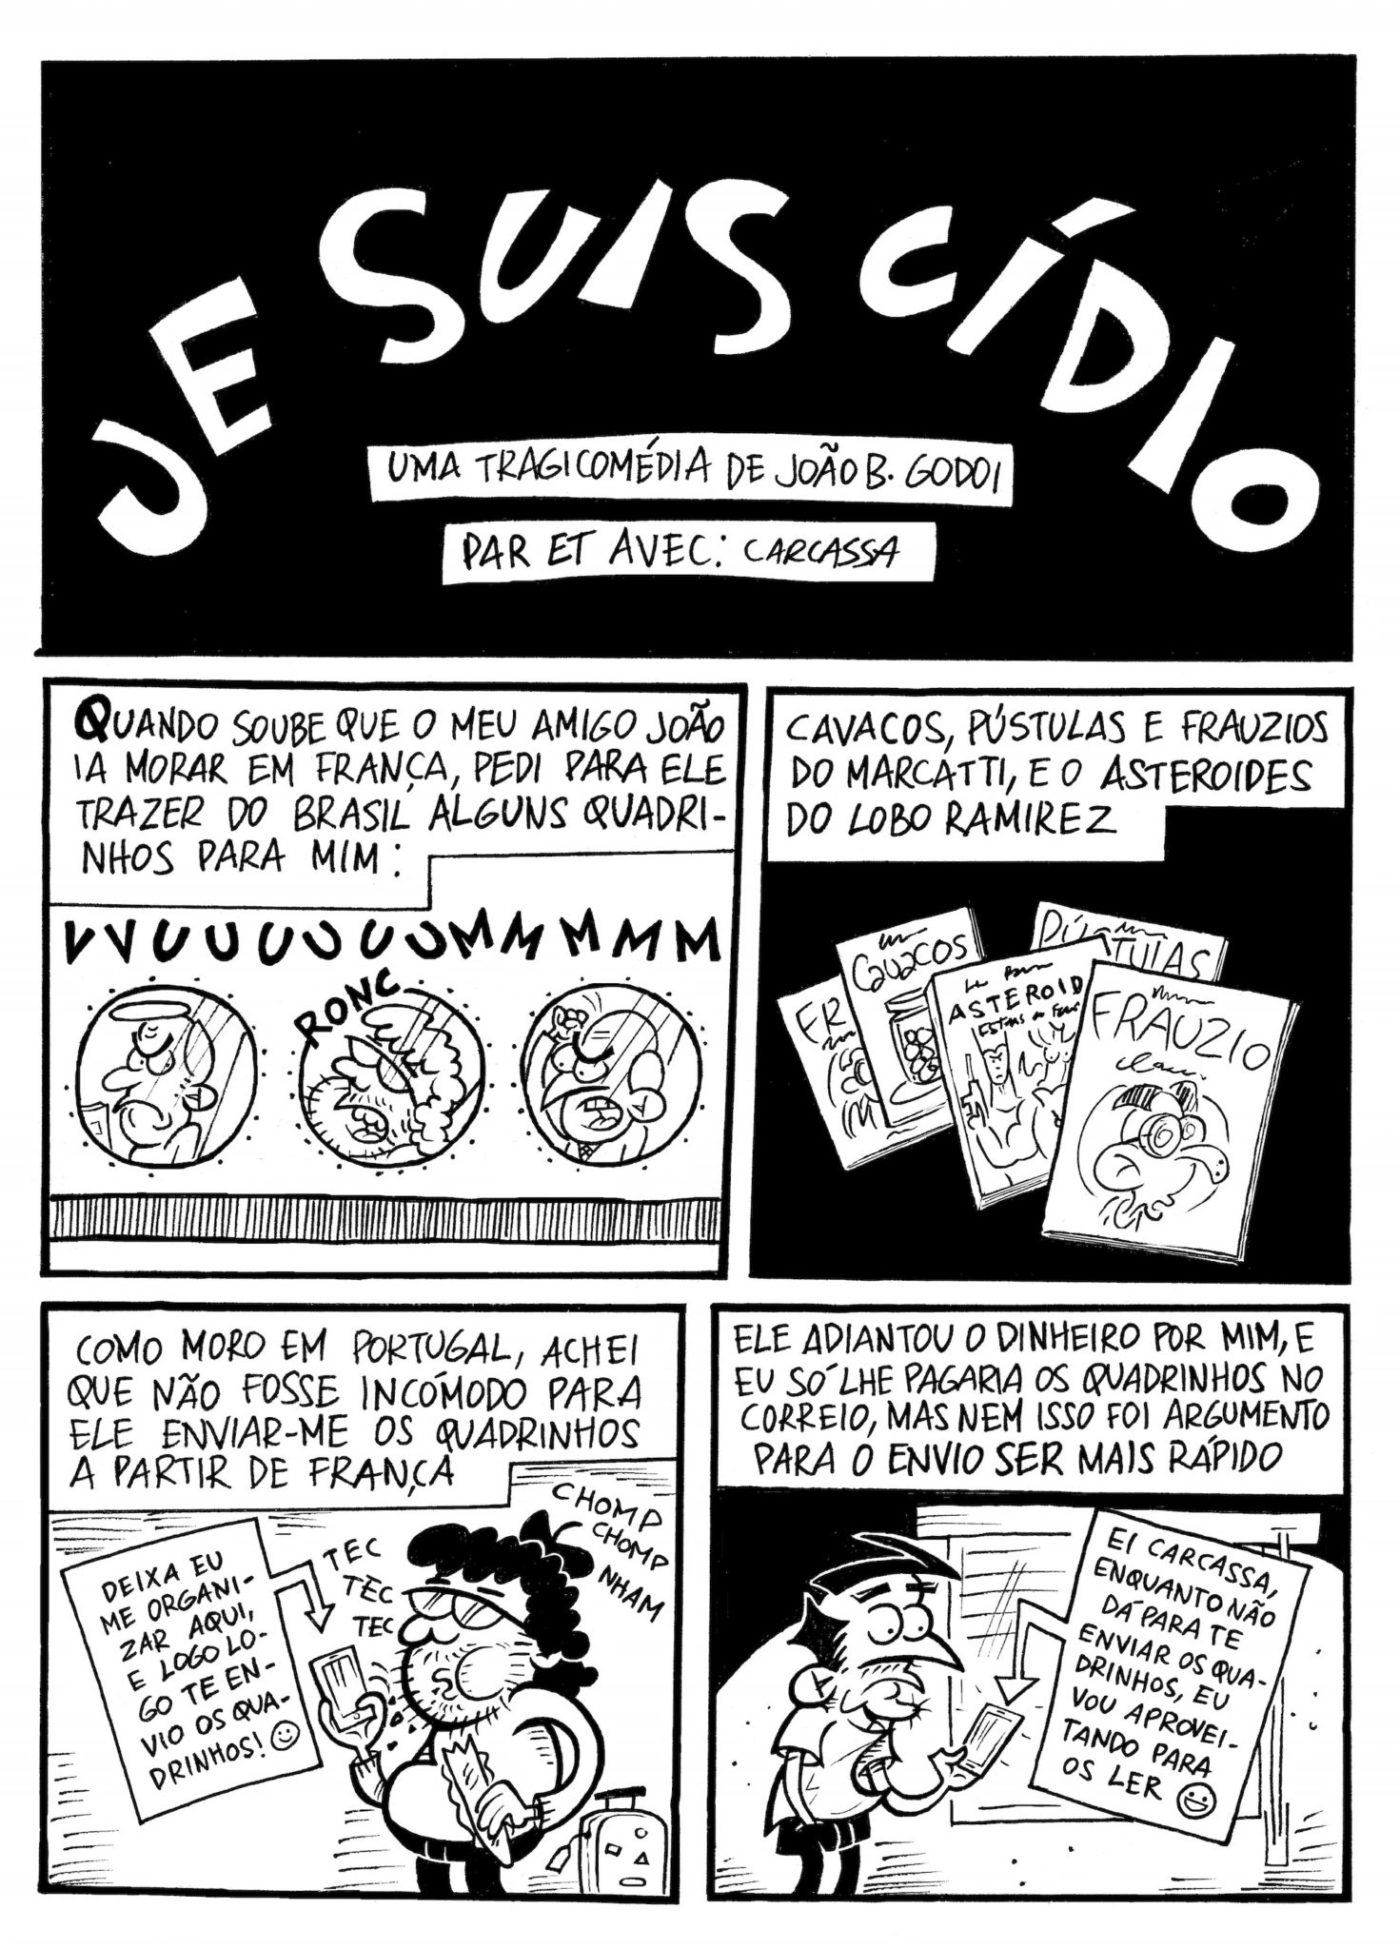 Je Suis Cídio #14, por Carlos Carcassa